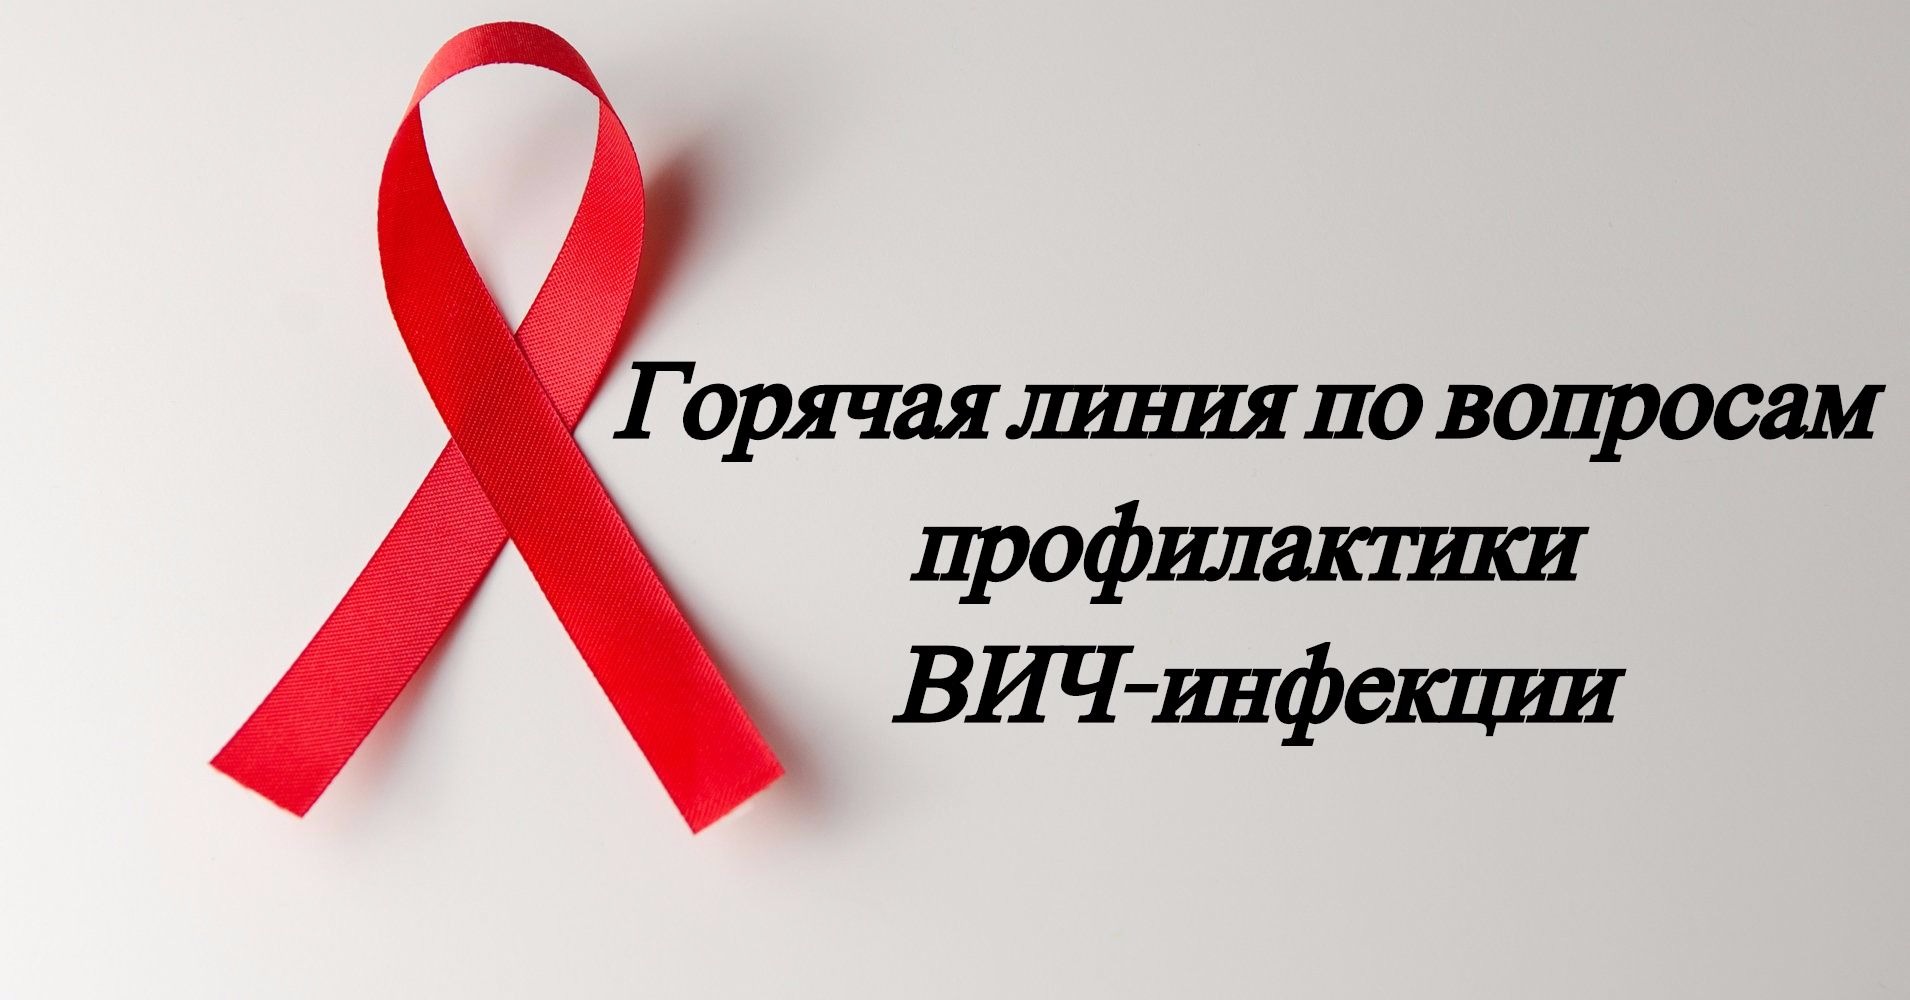 О старте «горячей линии» по профилактике ВИЧ-инфекции.